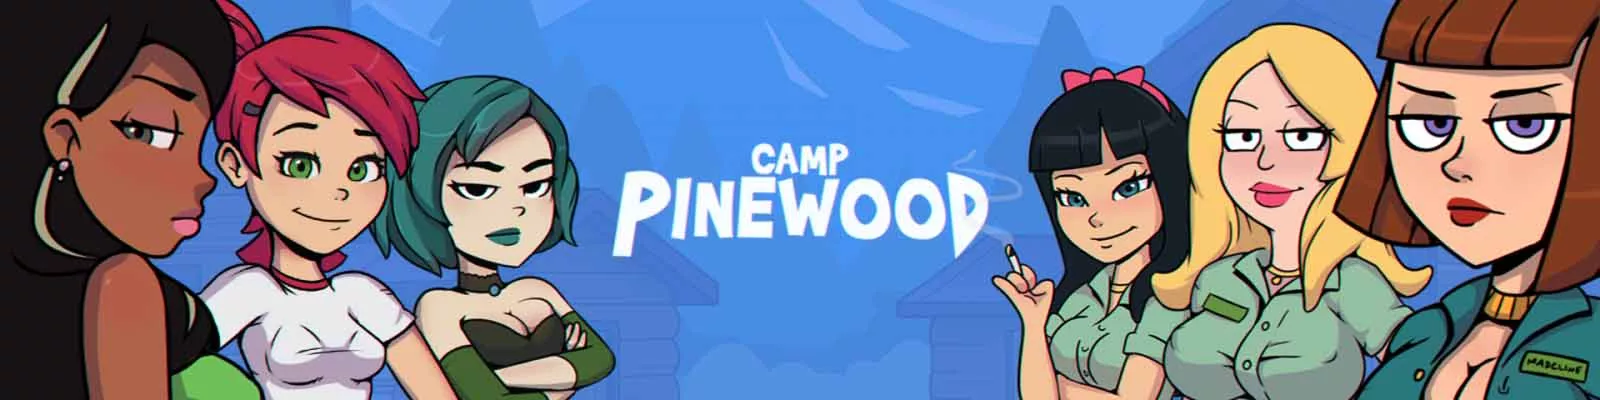 Camp Pinewood böyüklər oyunu